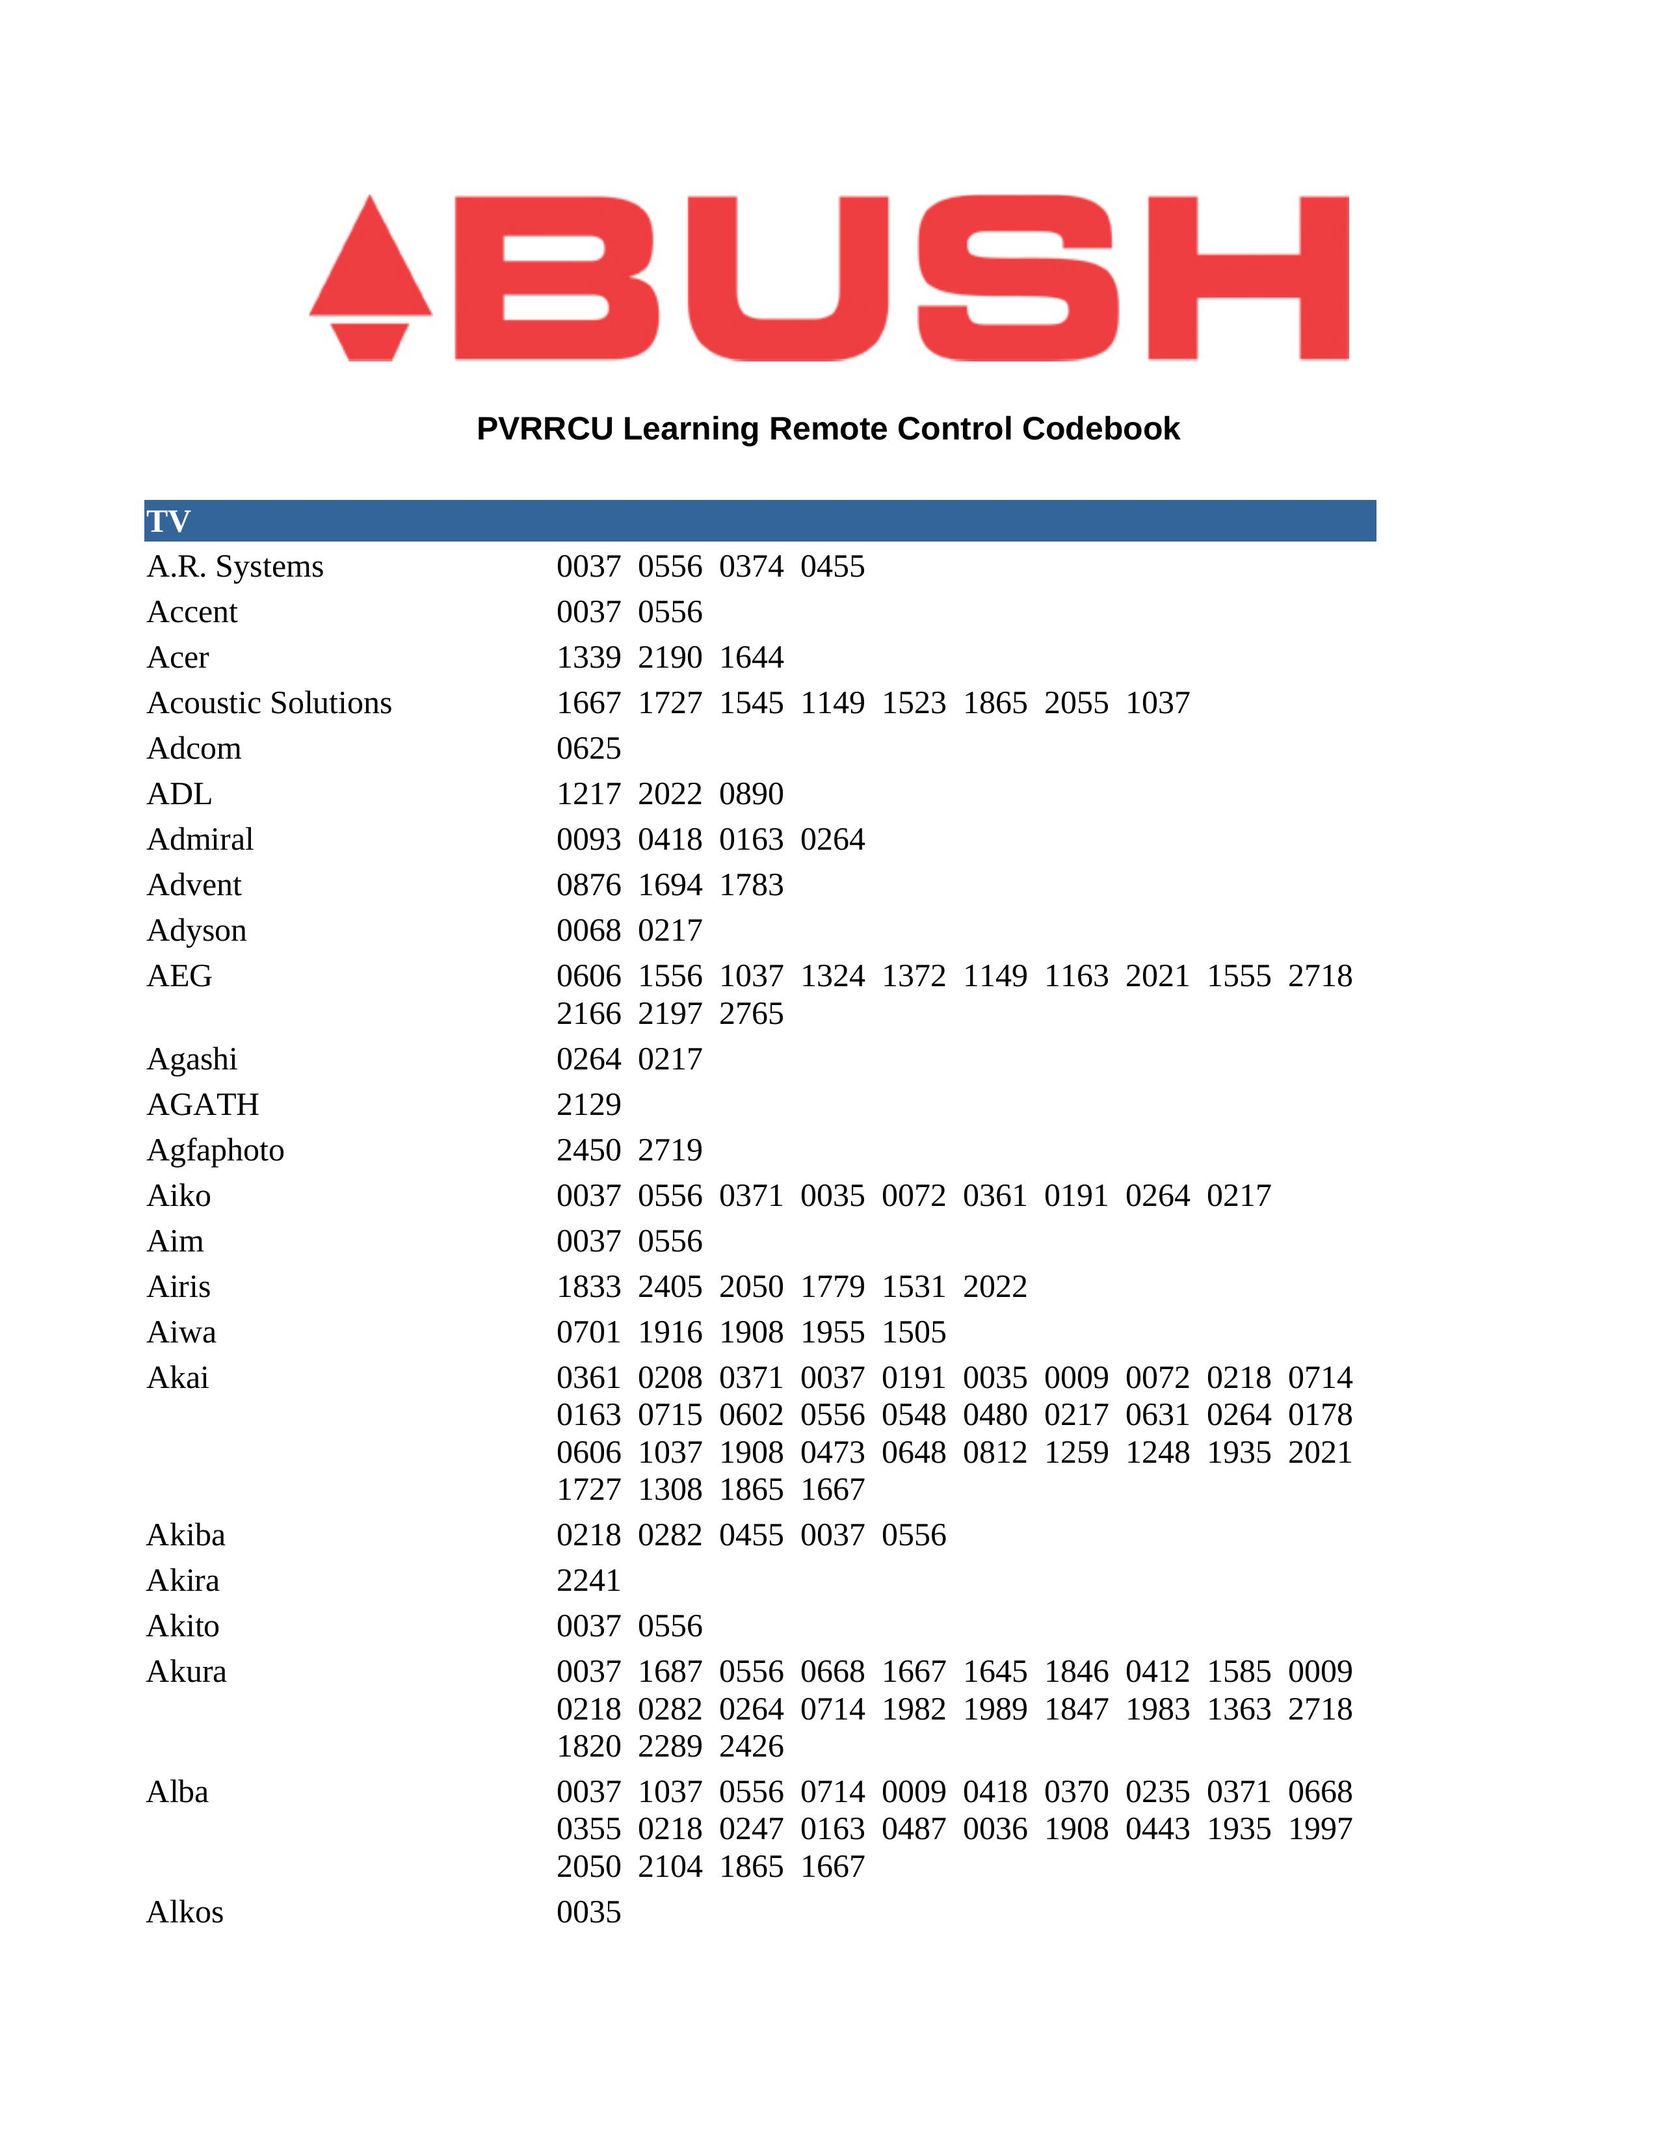 Bush PVRRCU Garage Door Opener User Manual